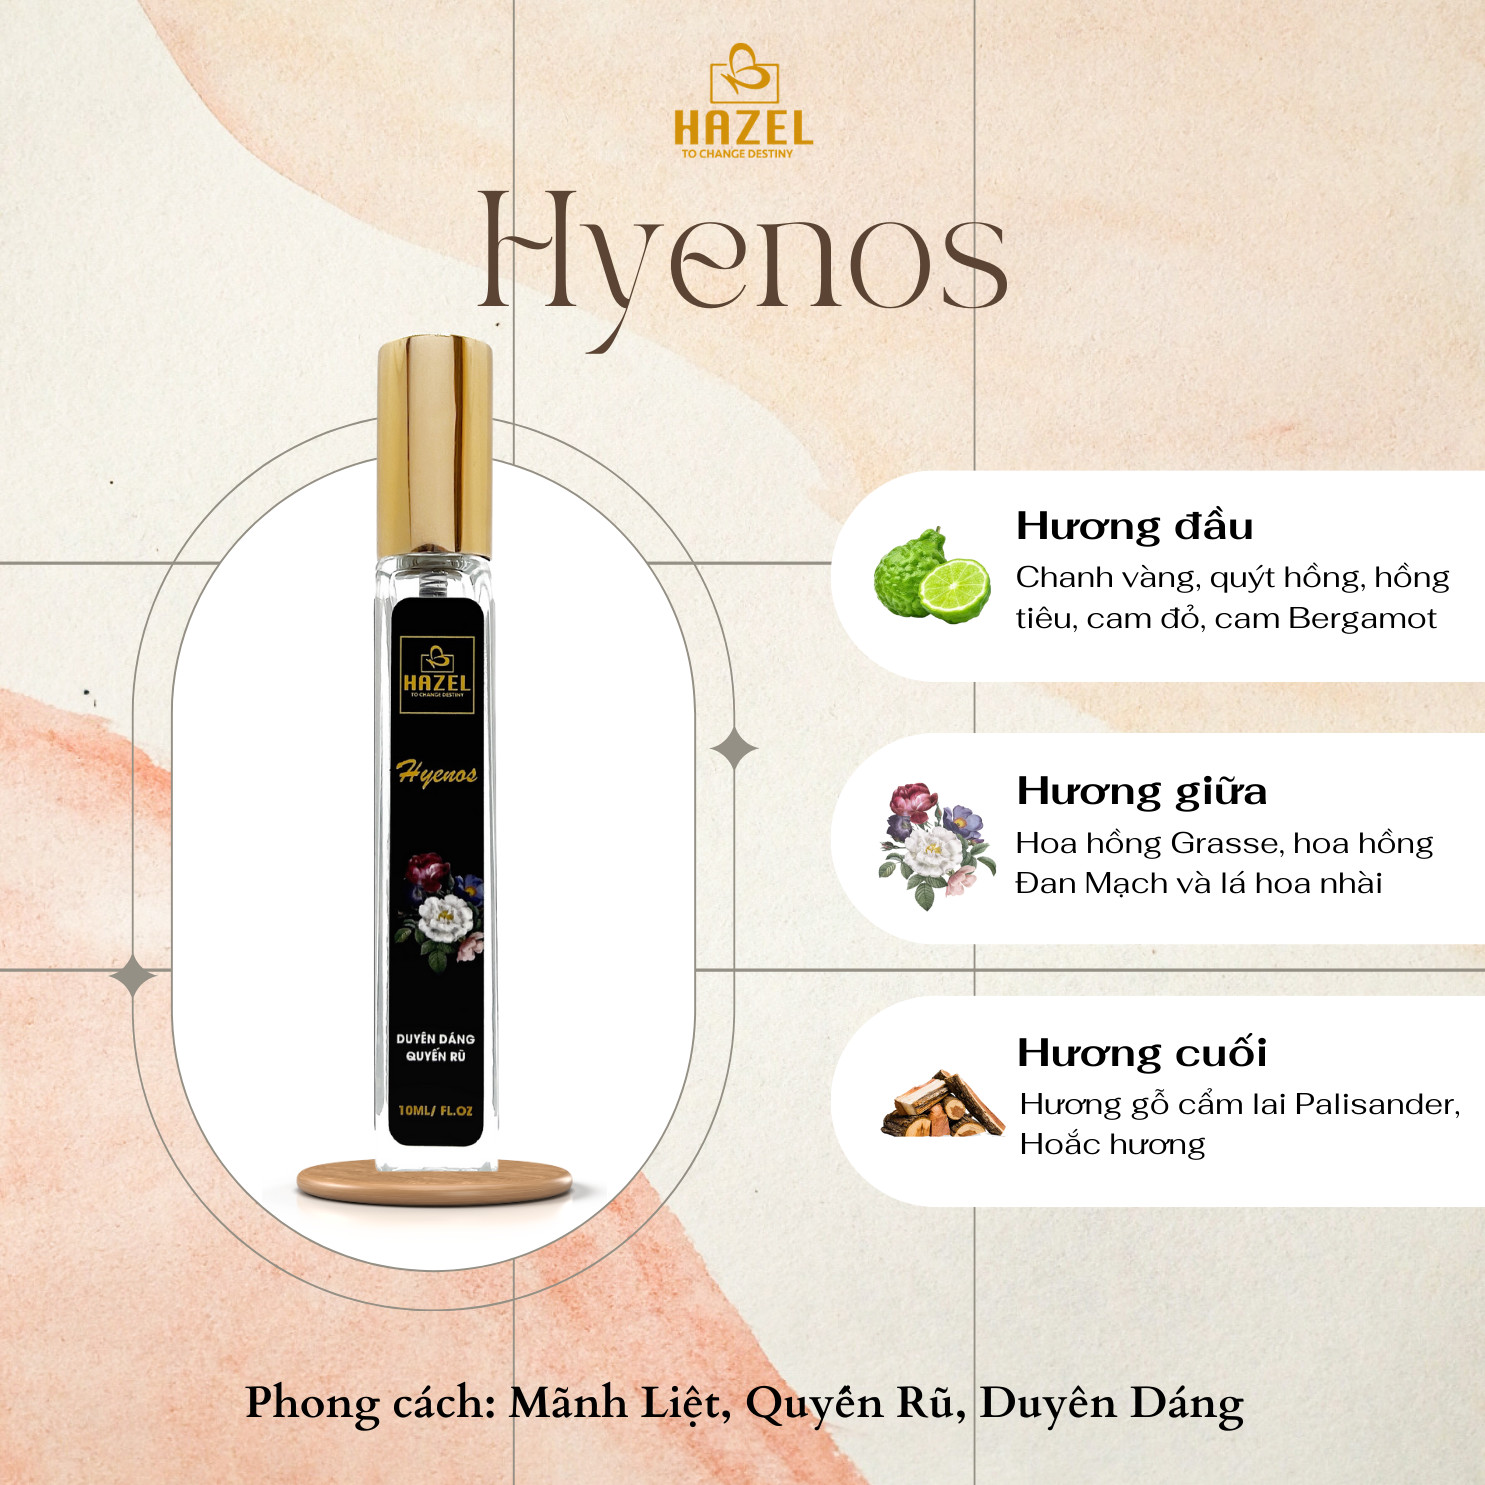 Nước hoa HAZEL mùi hương Hyenos- ngọt ngào, duyên dáng nhưng không kém phần quyến rũ